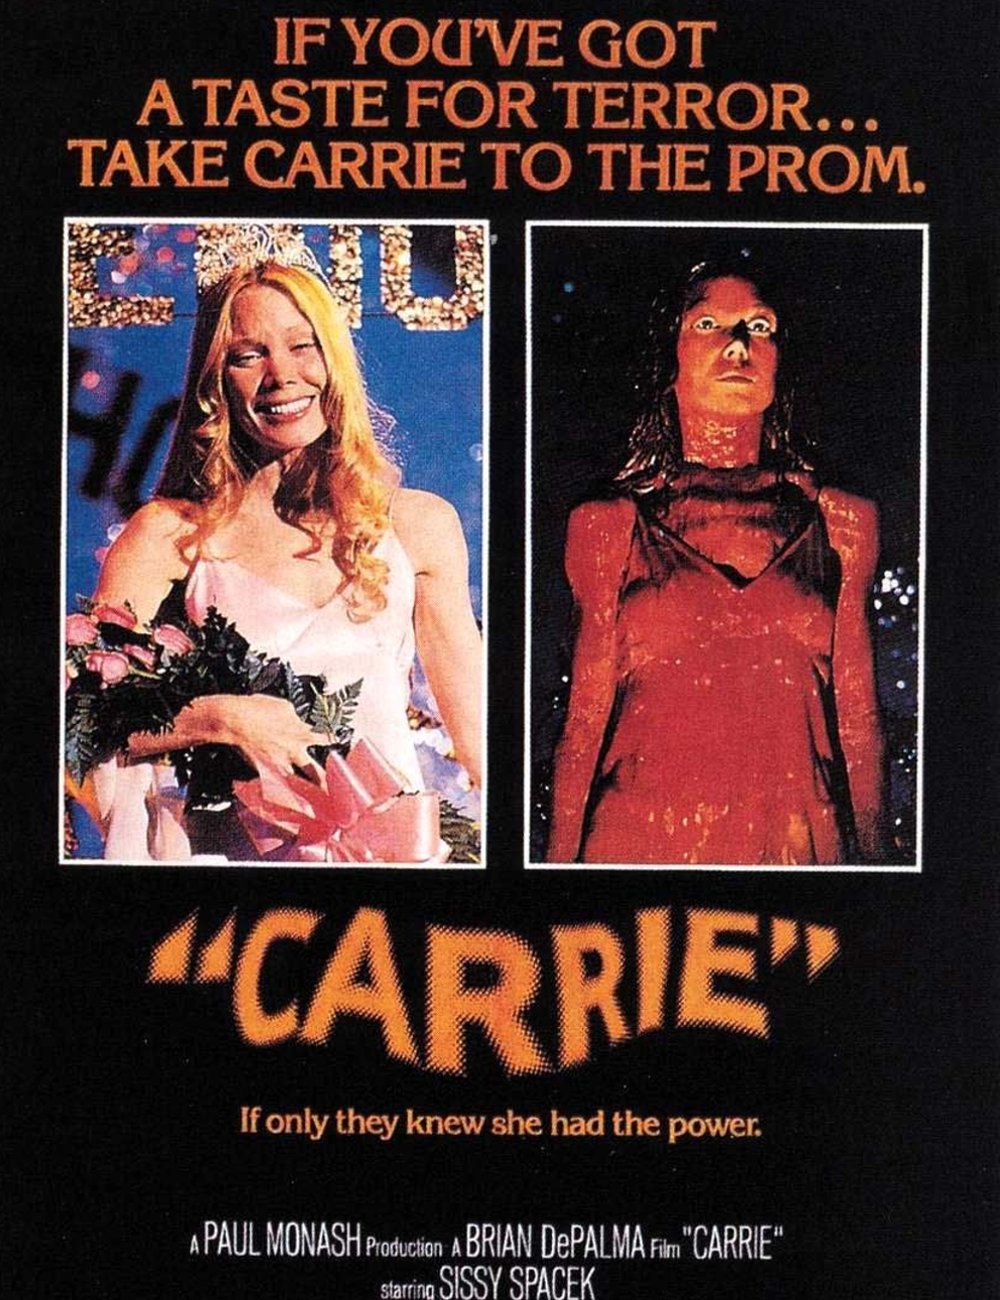 Carrie, a Estranha - filme - filmes baseados em livros - dicas - halloween - https://stealthelook.com.br